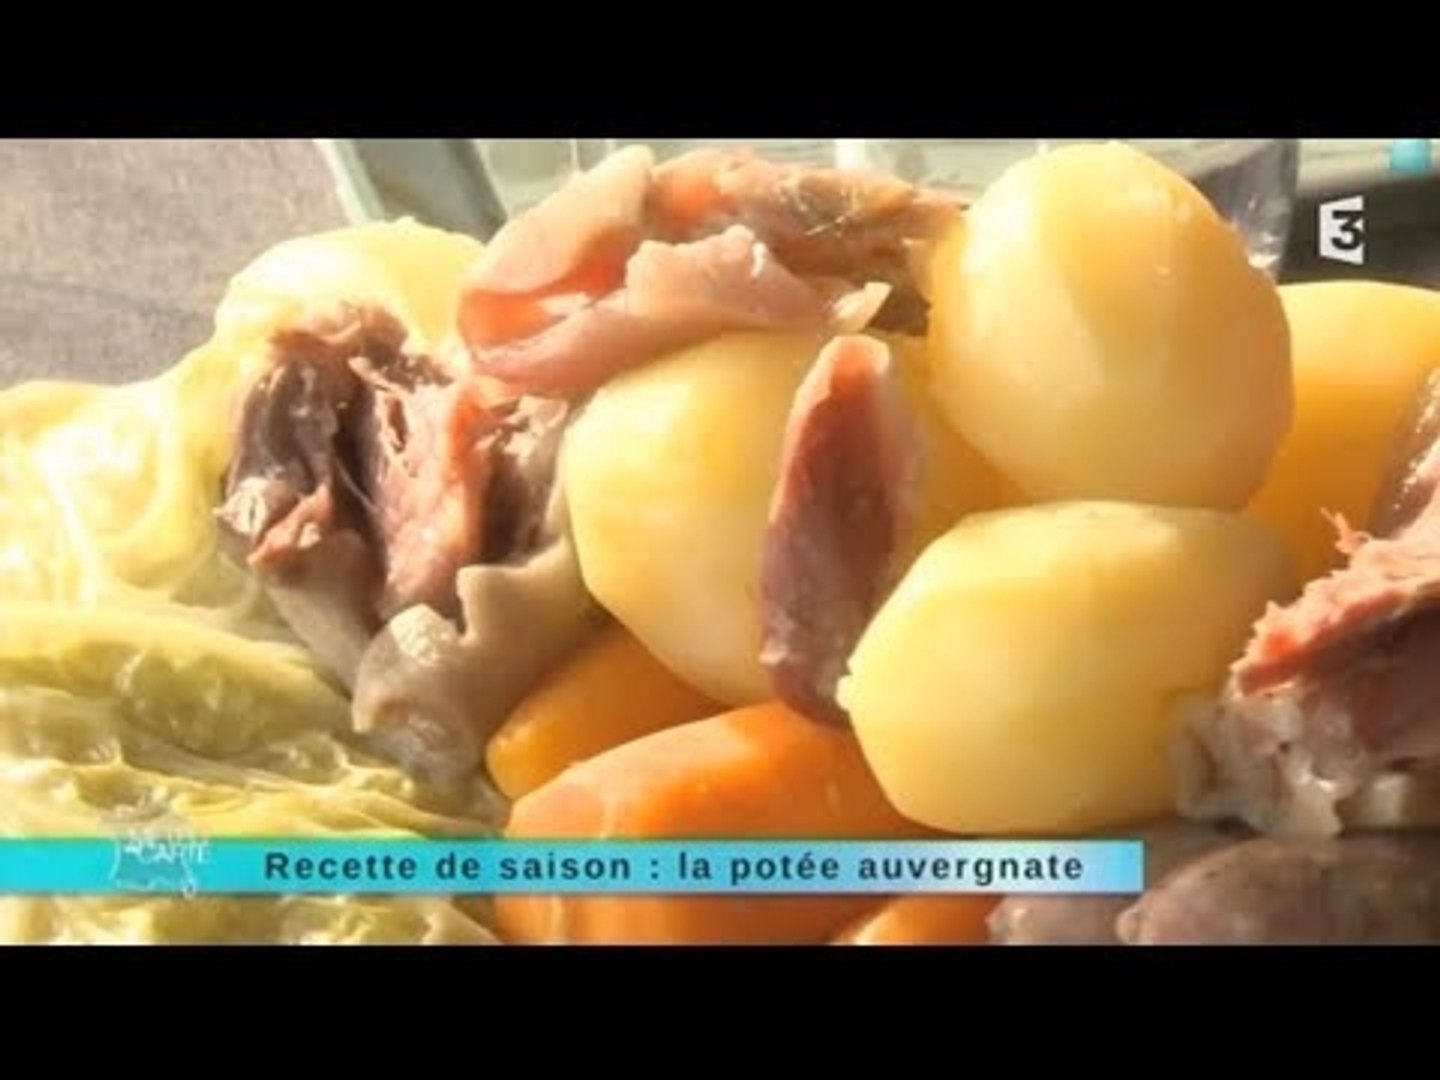 Recette De Saison La Potee Auvergnate Video Dailymotion